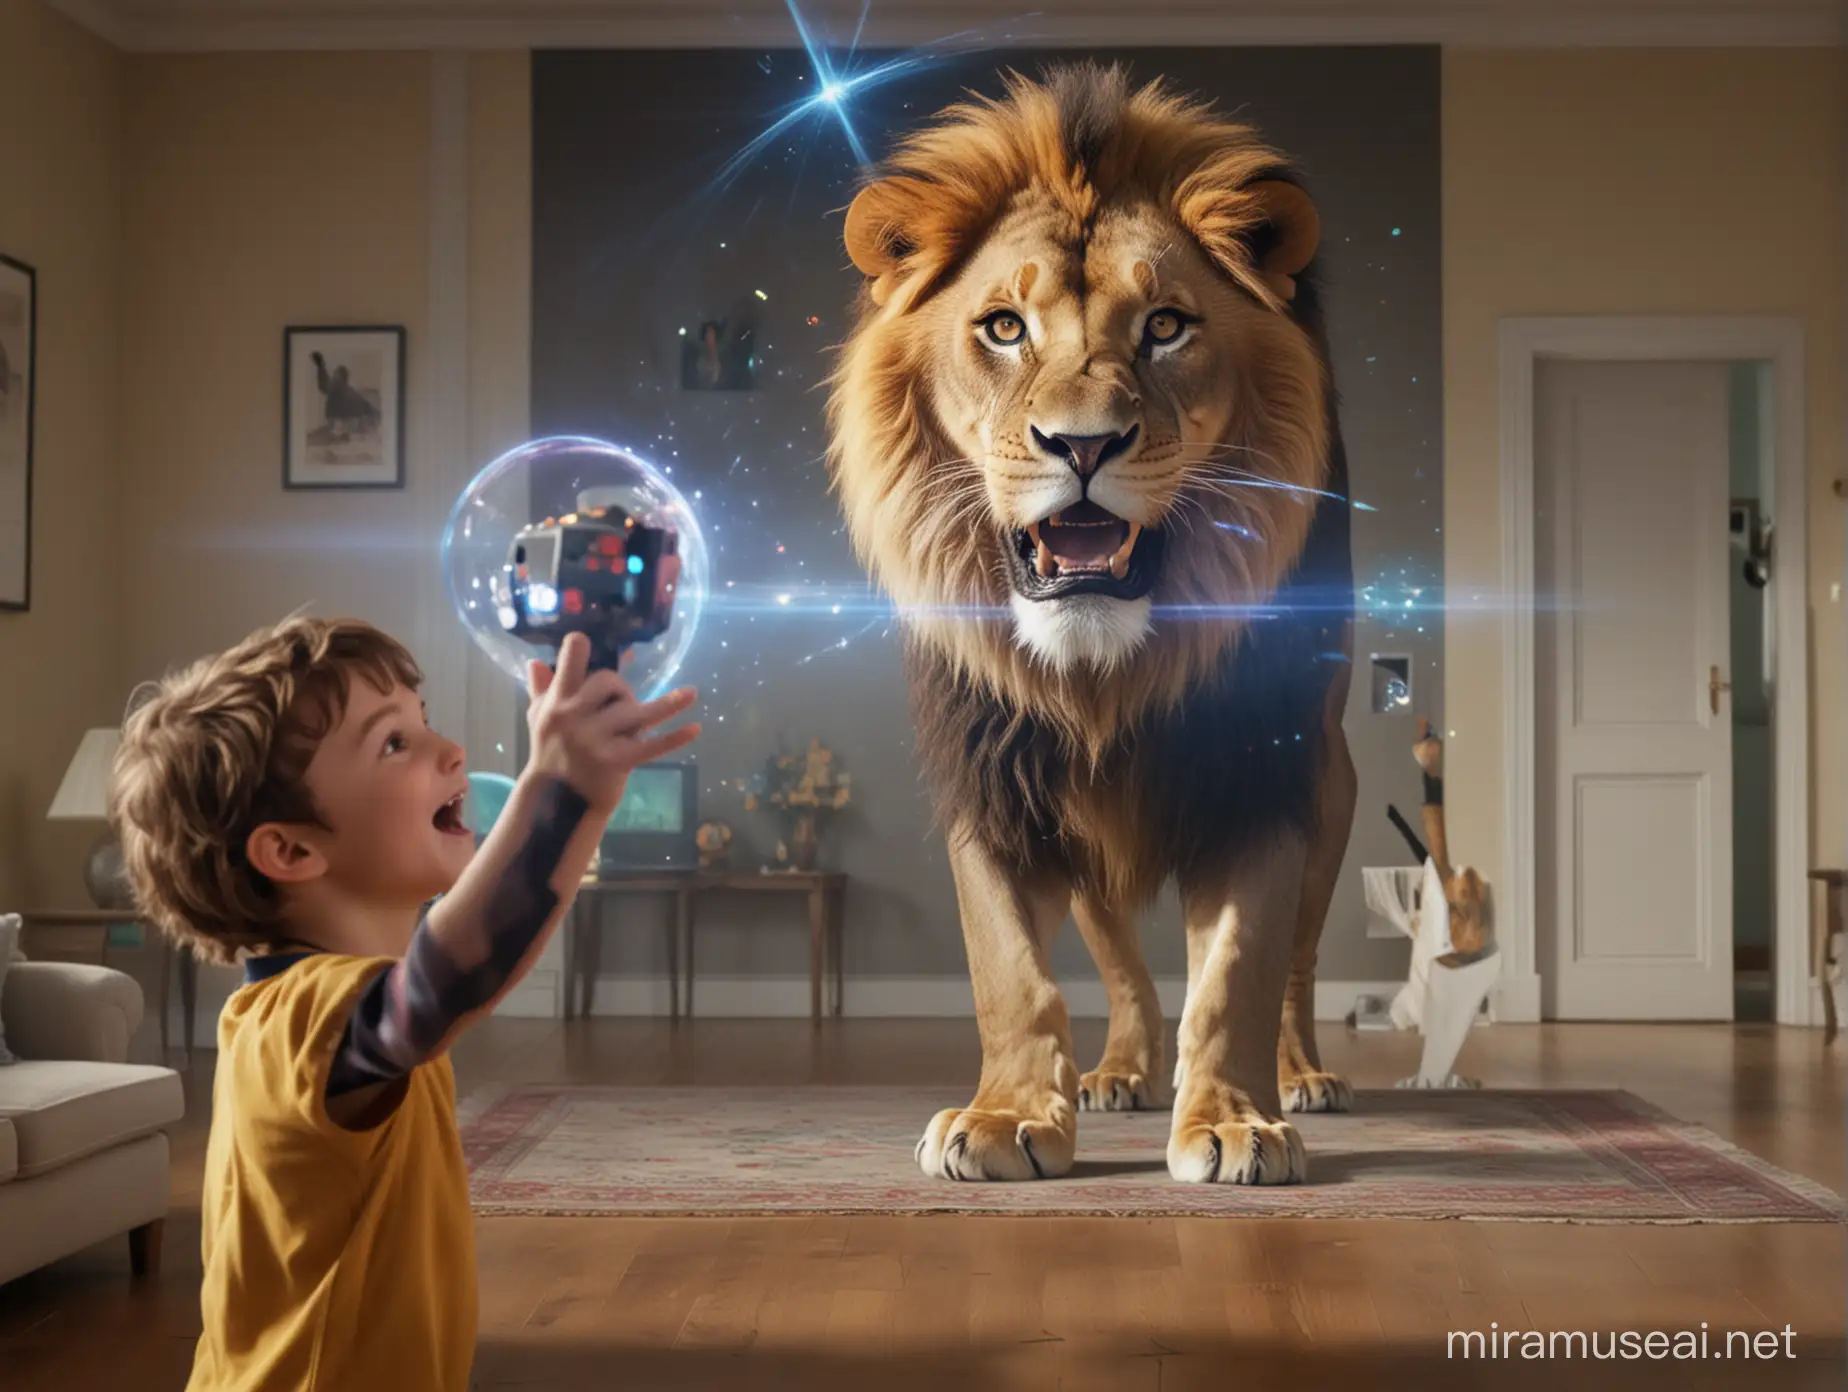 на заднем фоне ребенок держит в руках джойстик и радуется, на переднем плане голограмма льва, действия происходят дома 